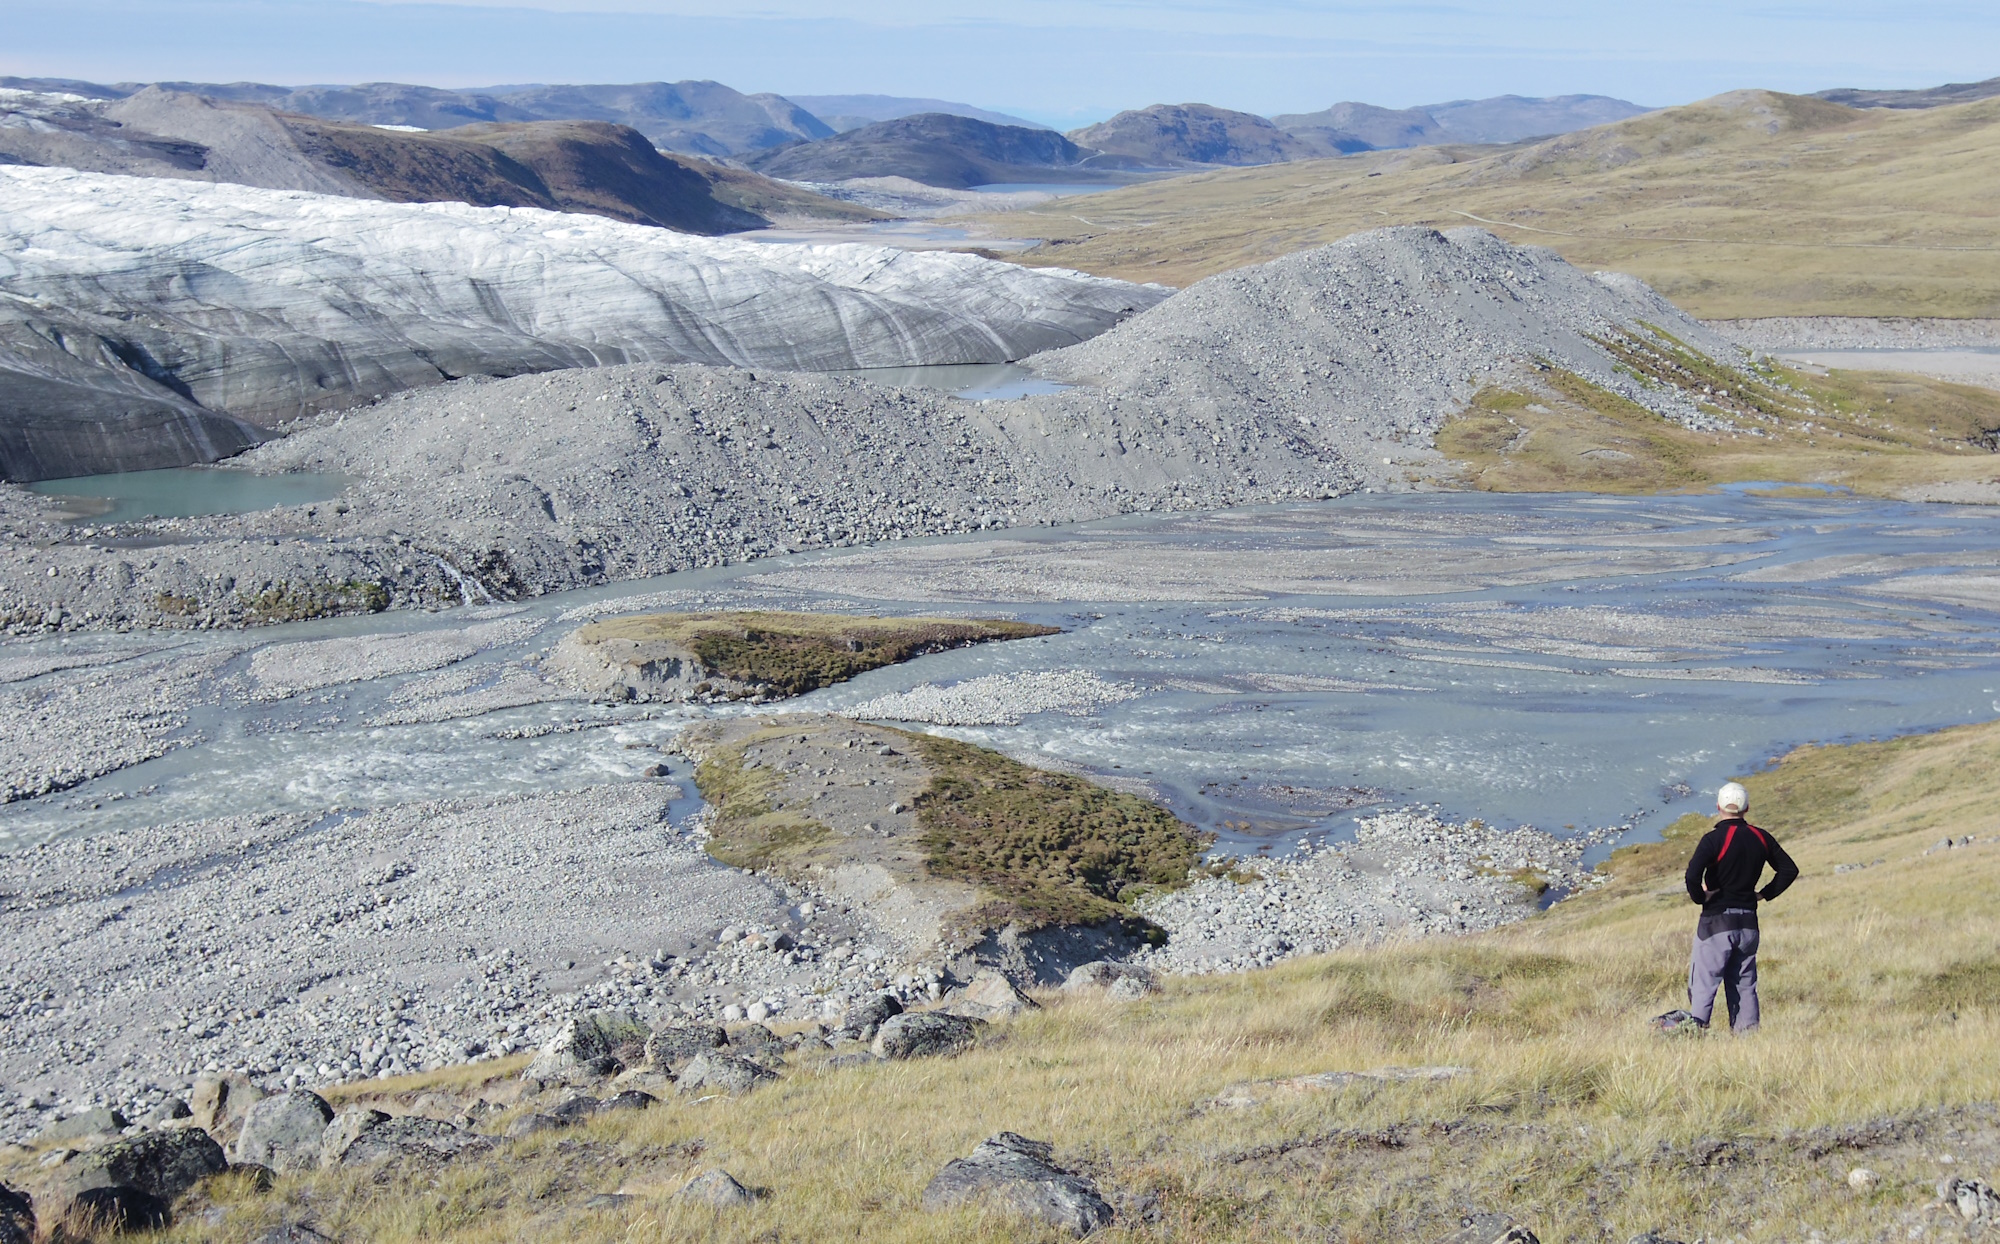 Οι πάγοι της Γροιλανδίας λιώνουν και δίνουν τη θέση τους σε βλάστηση